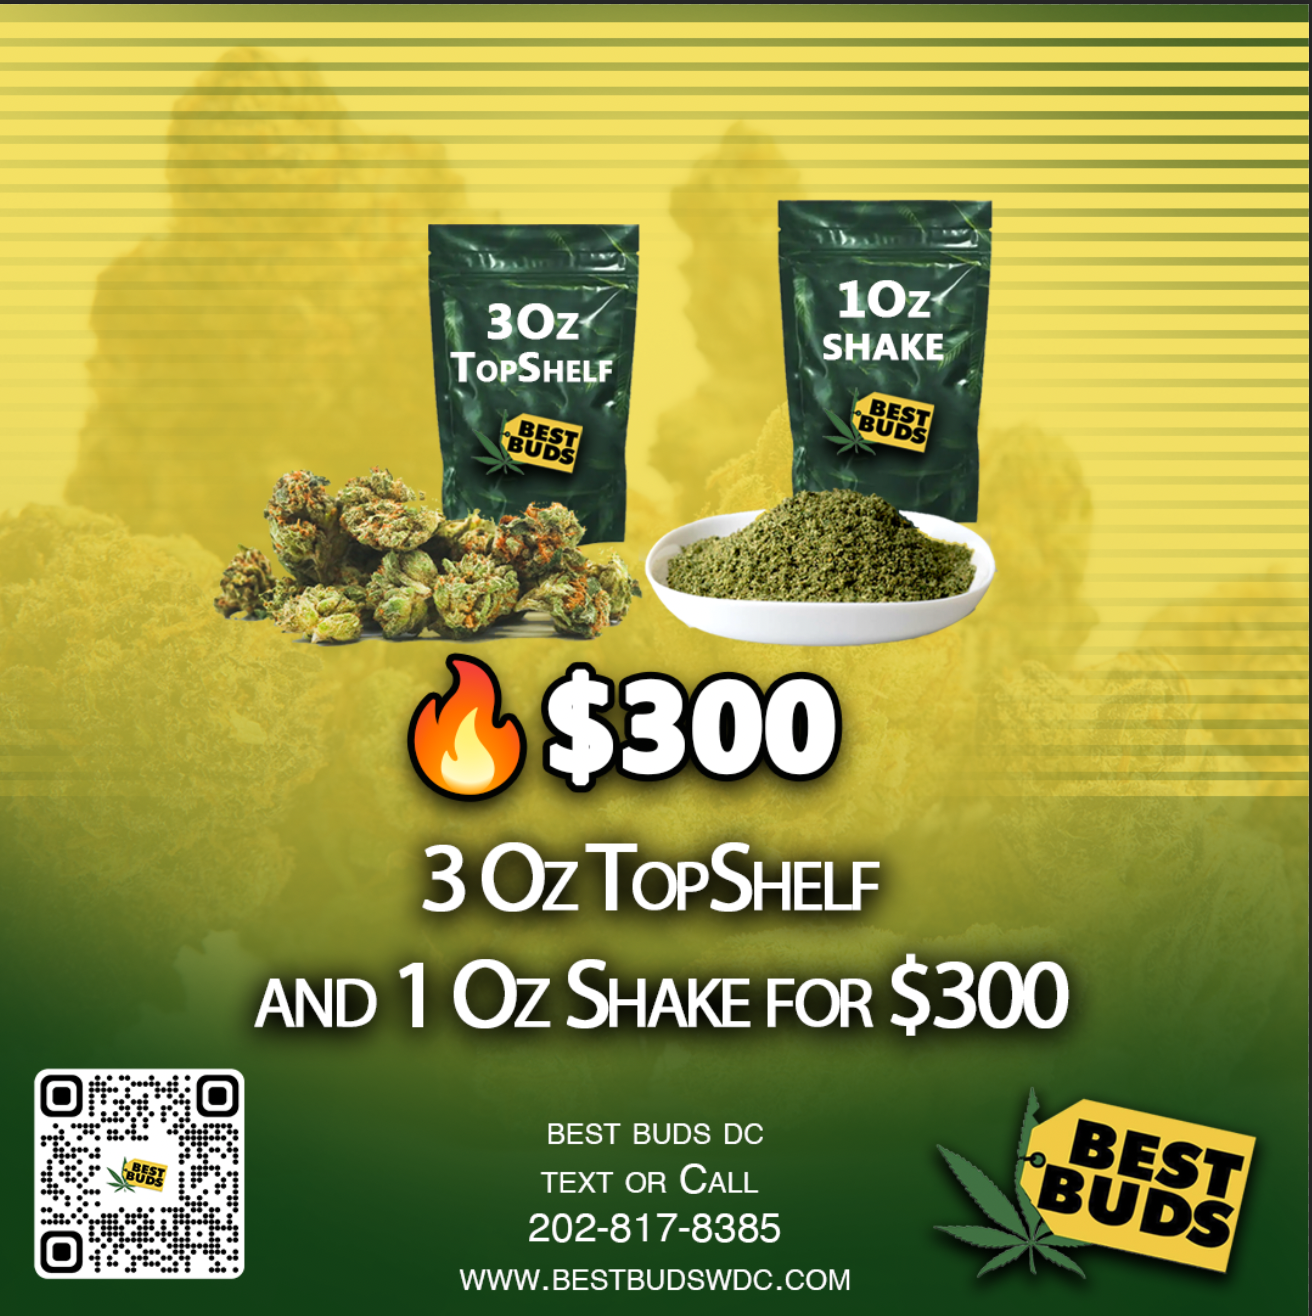 3 Oz TopShelf and 1 Oz Shake for $300